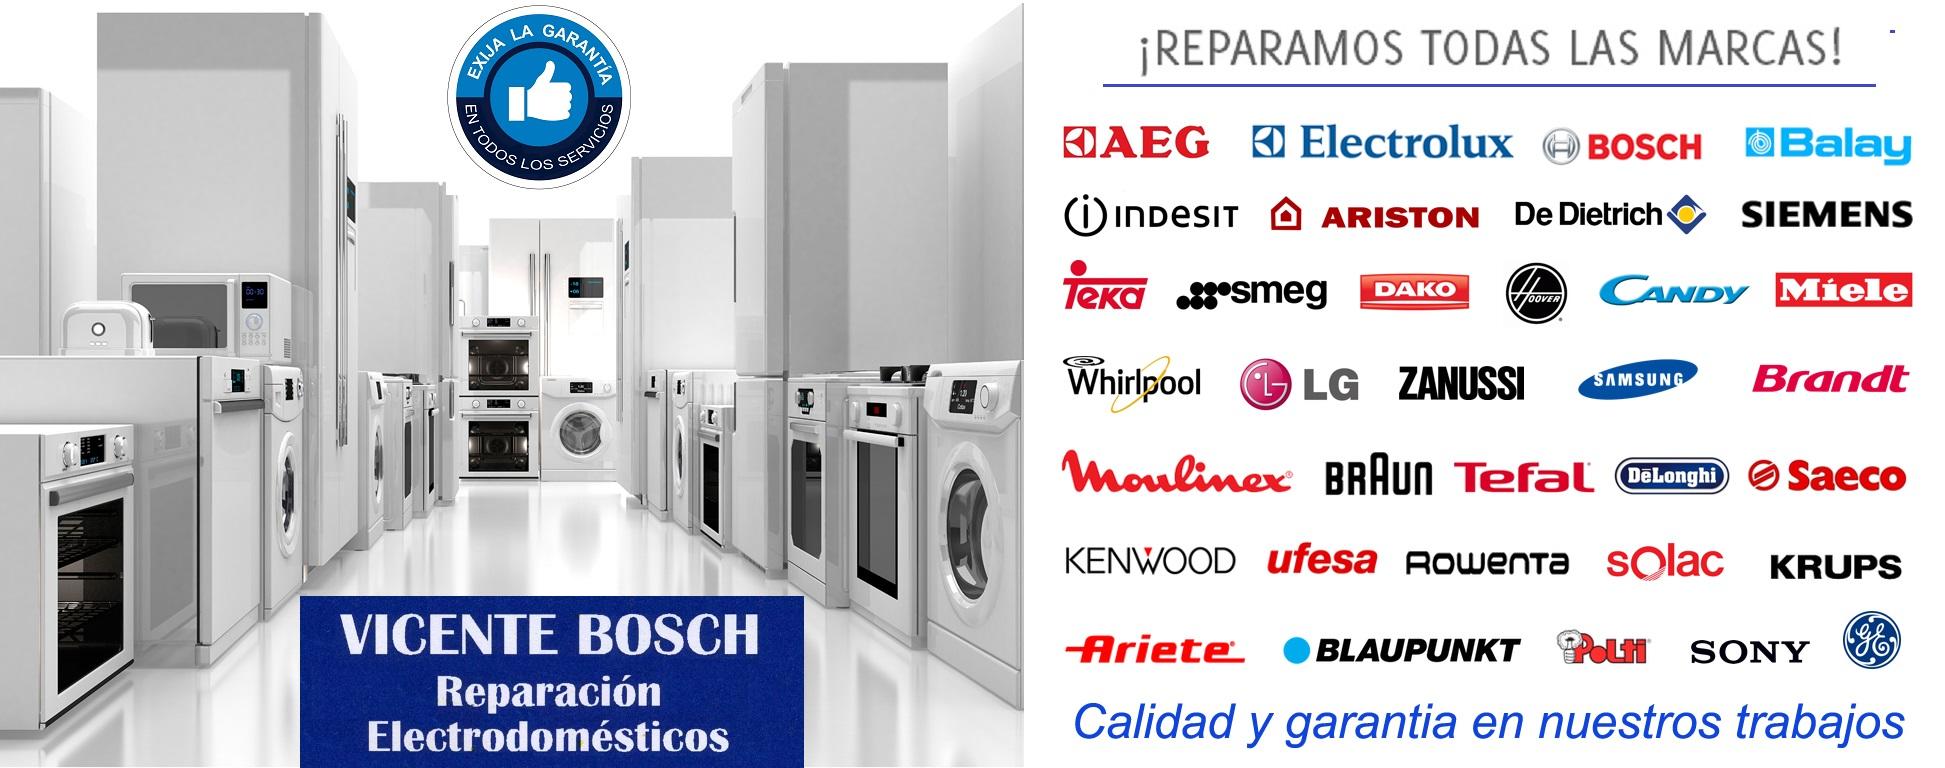 Images Vicente Bosch reparación y venta de electrodomésticos